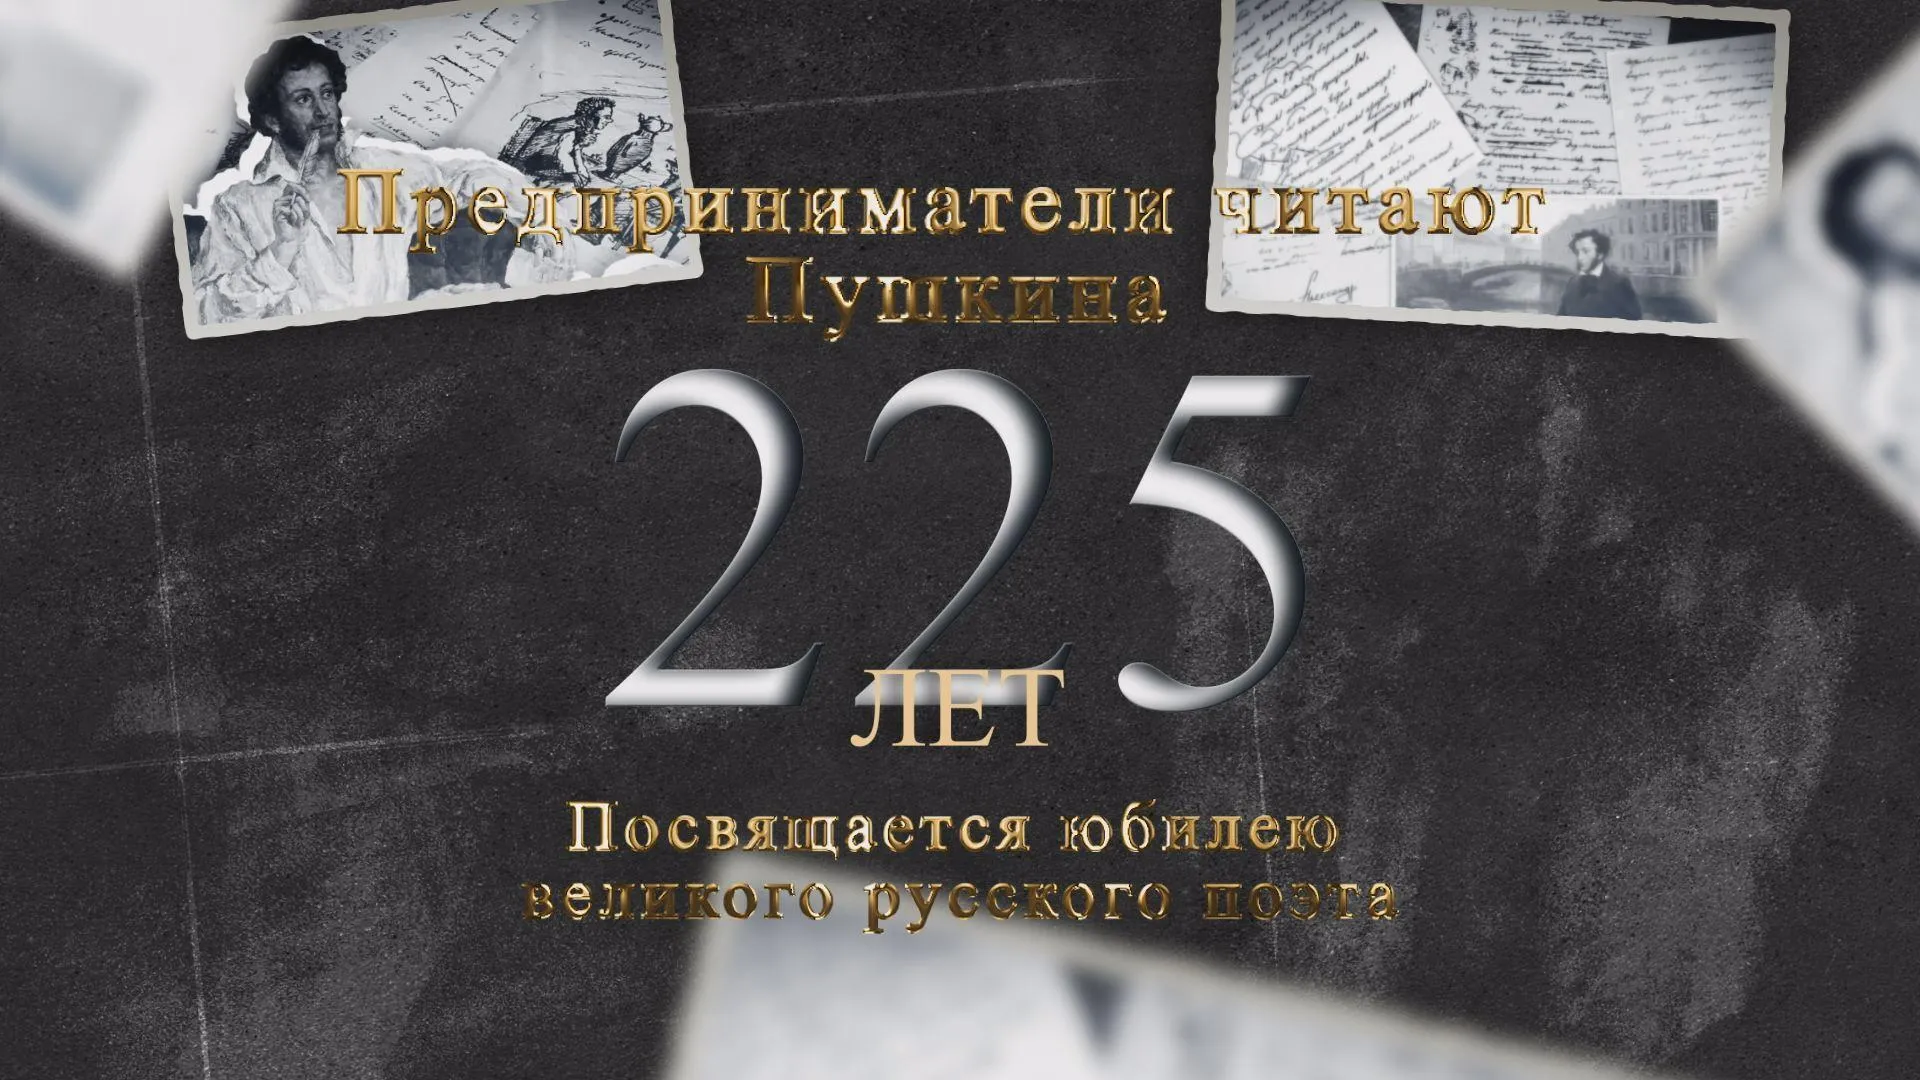 Предприниматели Подмосковья организовали флешмоб ко дню рождению Пушкина